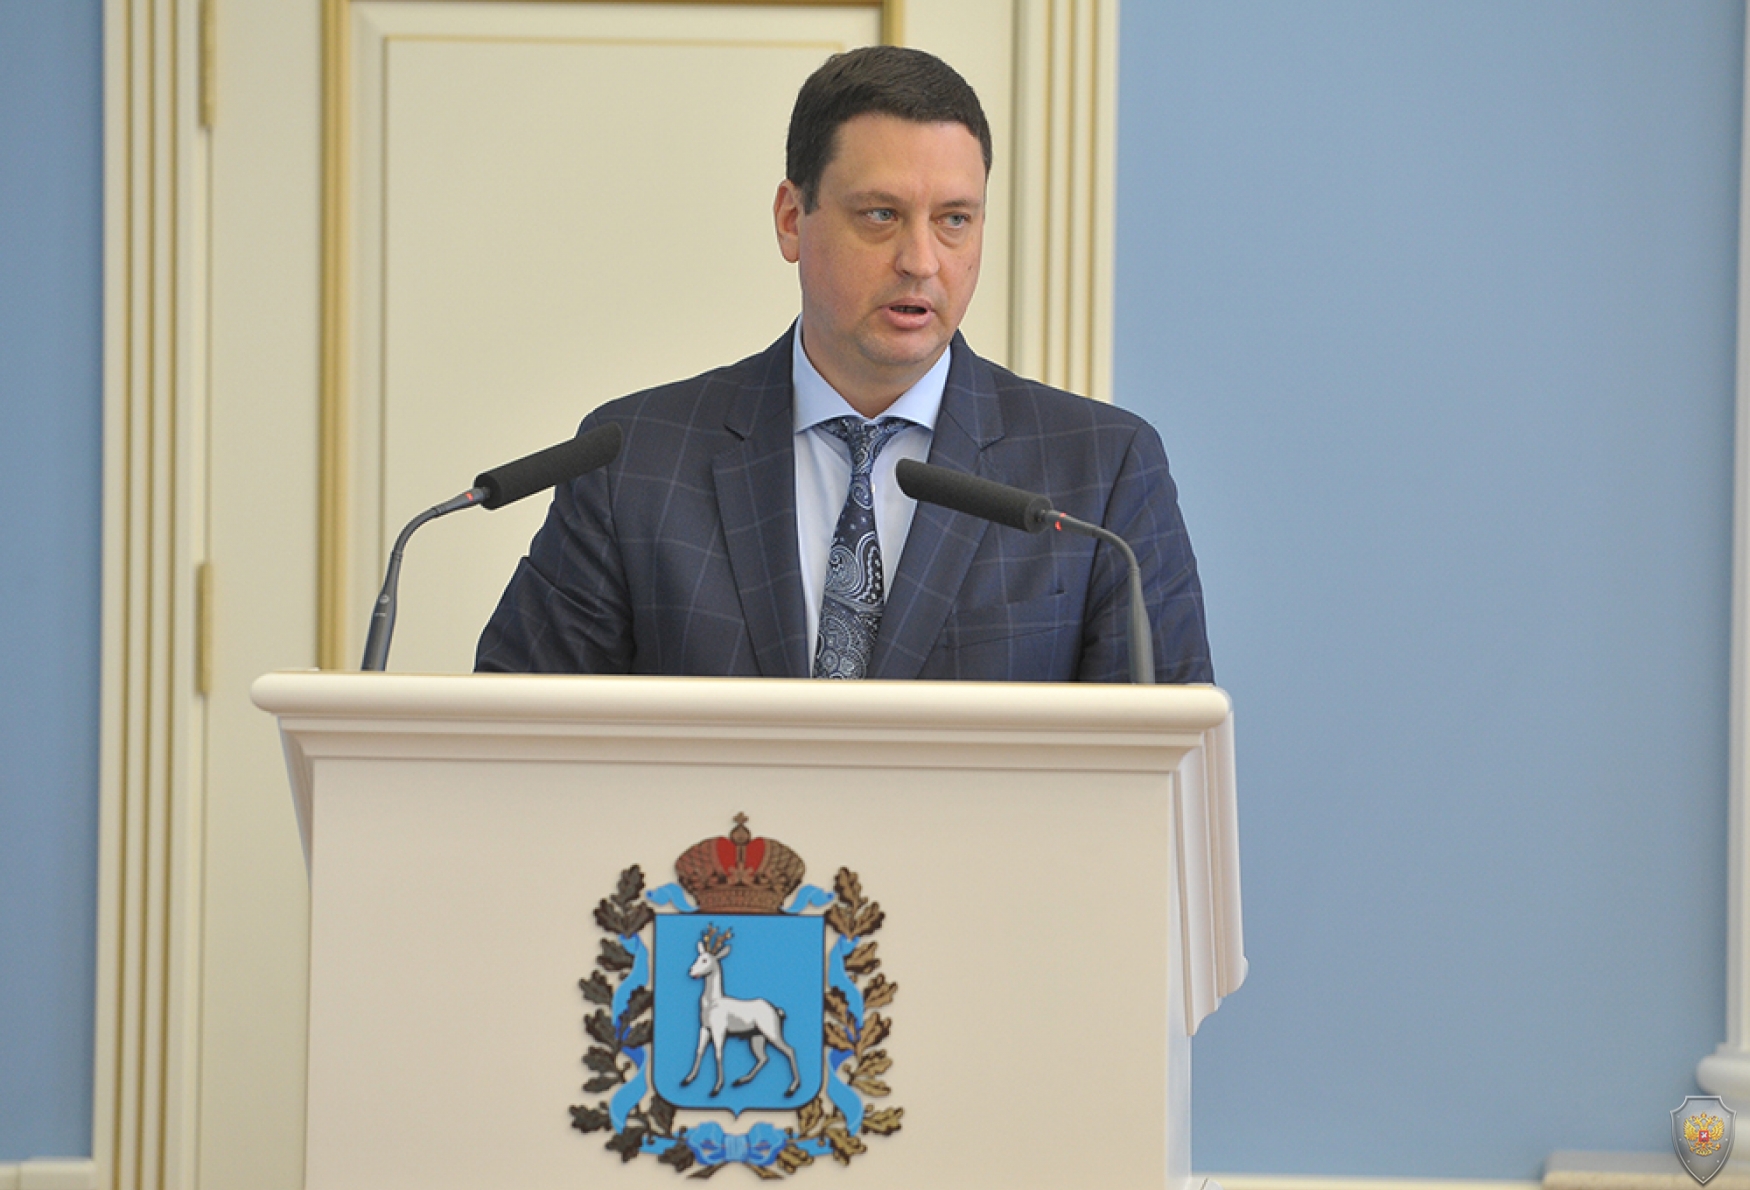 Выступление председателя избирательной комиссии Самарской области Михеева В.Н. об обеспечении безопасности в период проведения Единого дня голосования 9 сентября 2018.